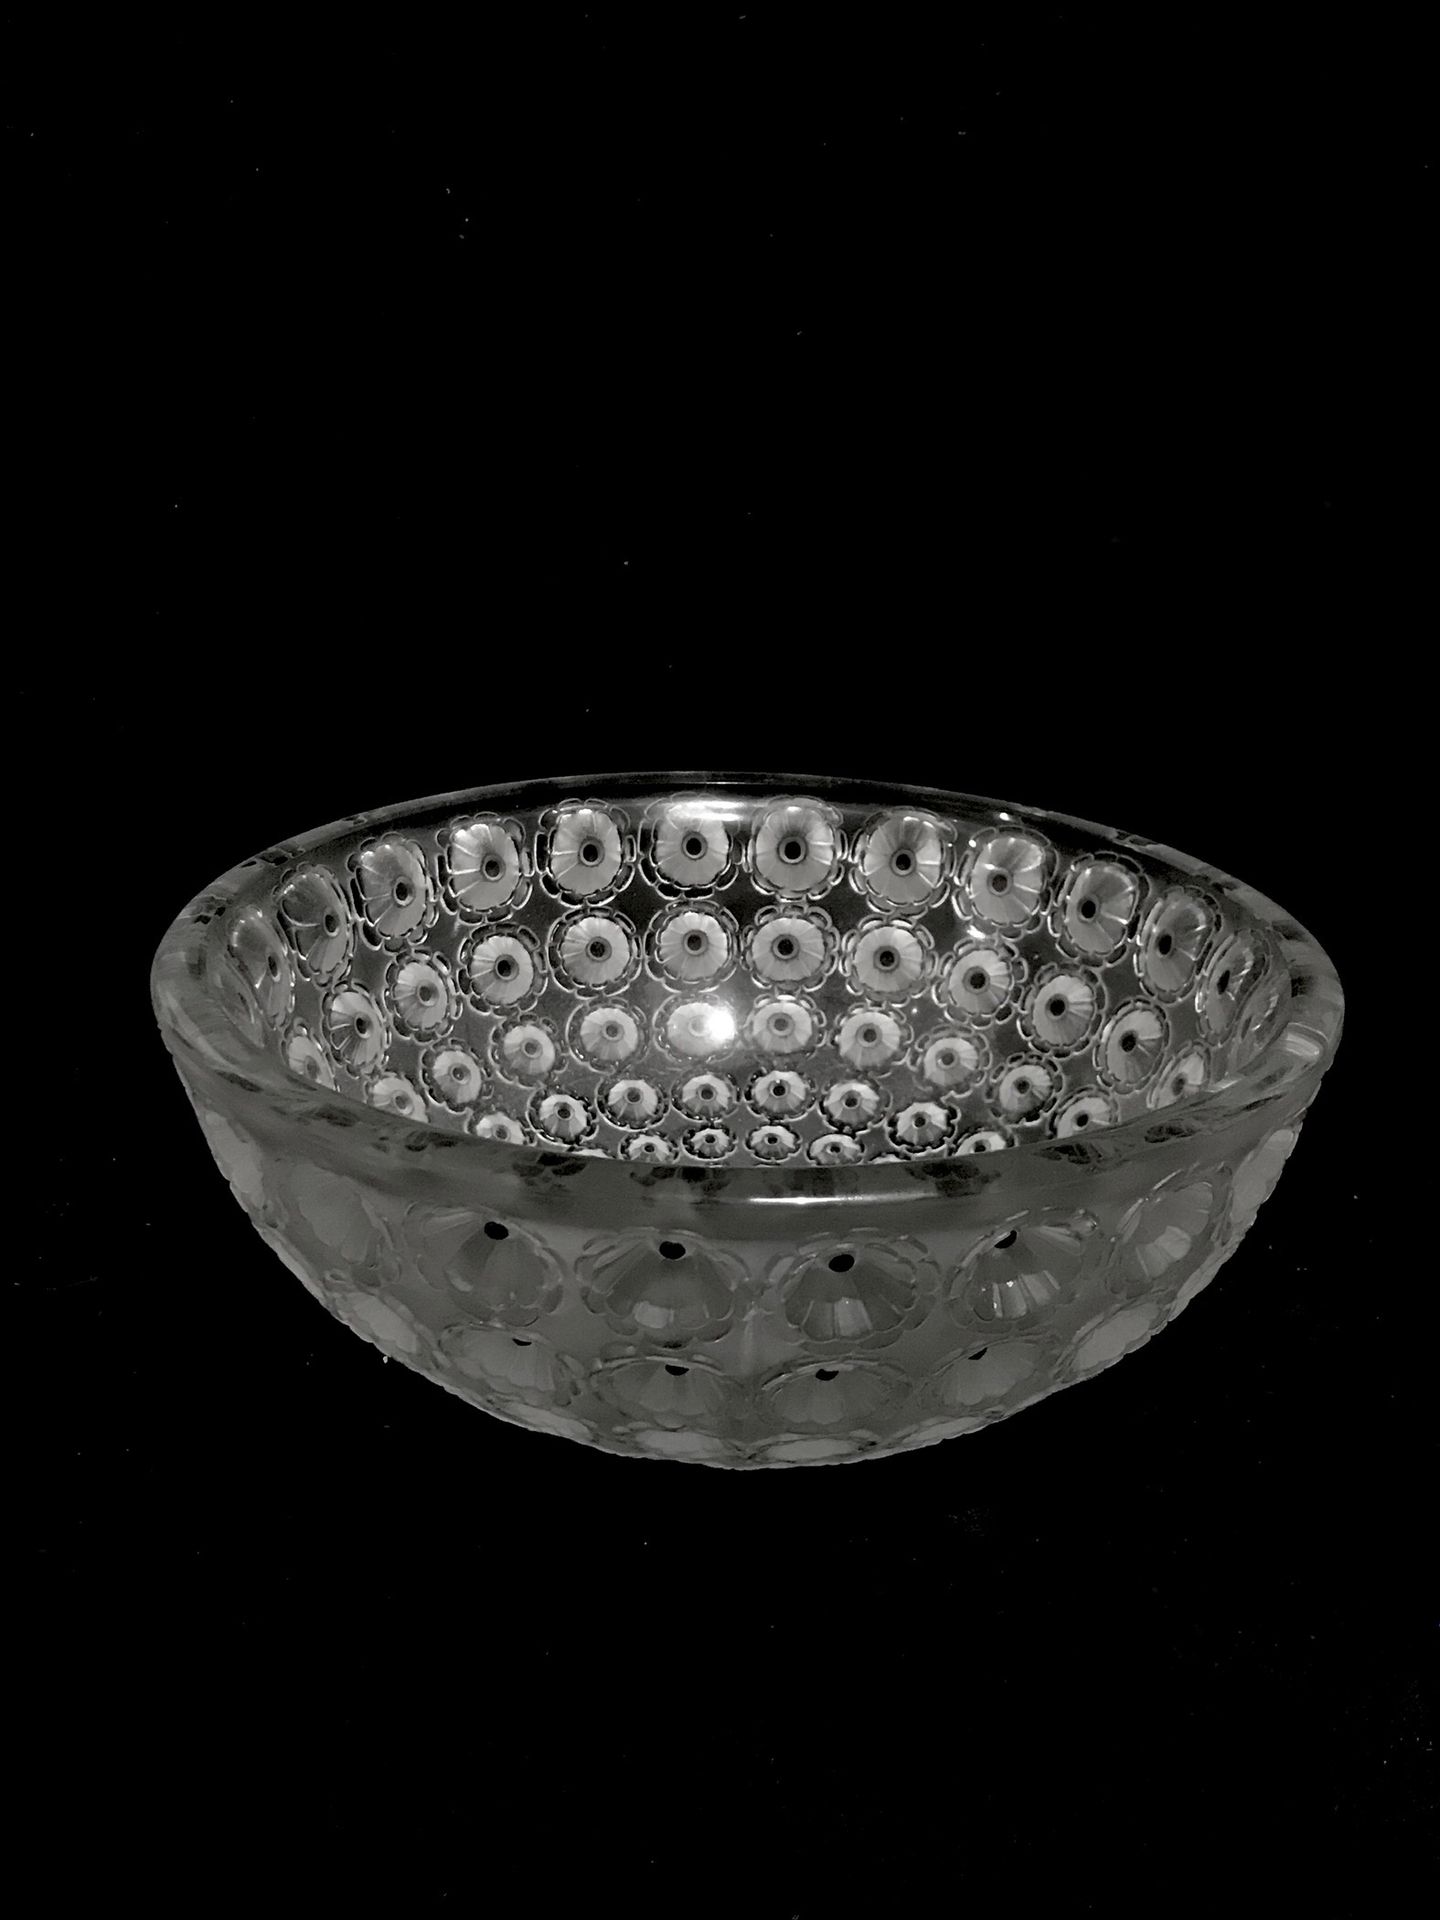 Null 
勒内-拉里克（1860-1945）。
仙人掌 "杯模型，白色玻璃吹塑，黑色珐琅。
1933年创建的模型，1947年后未再拍摄。
背面有LALIQUE&hellip;